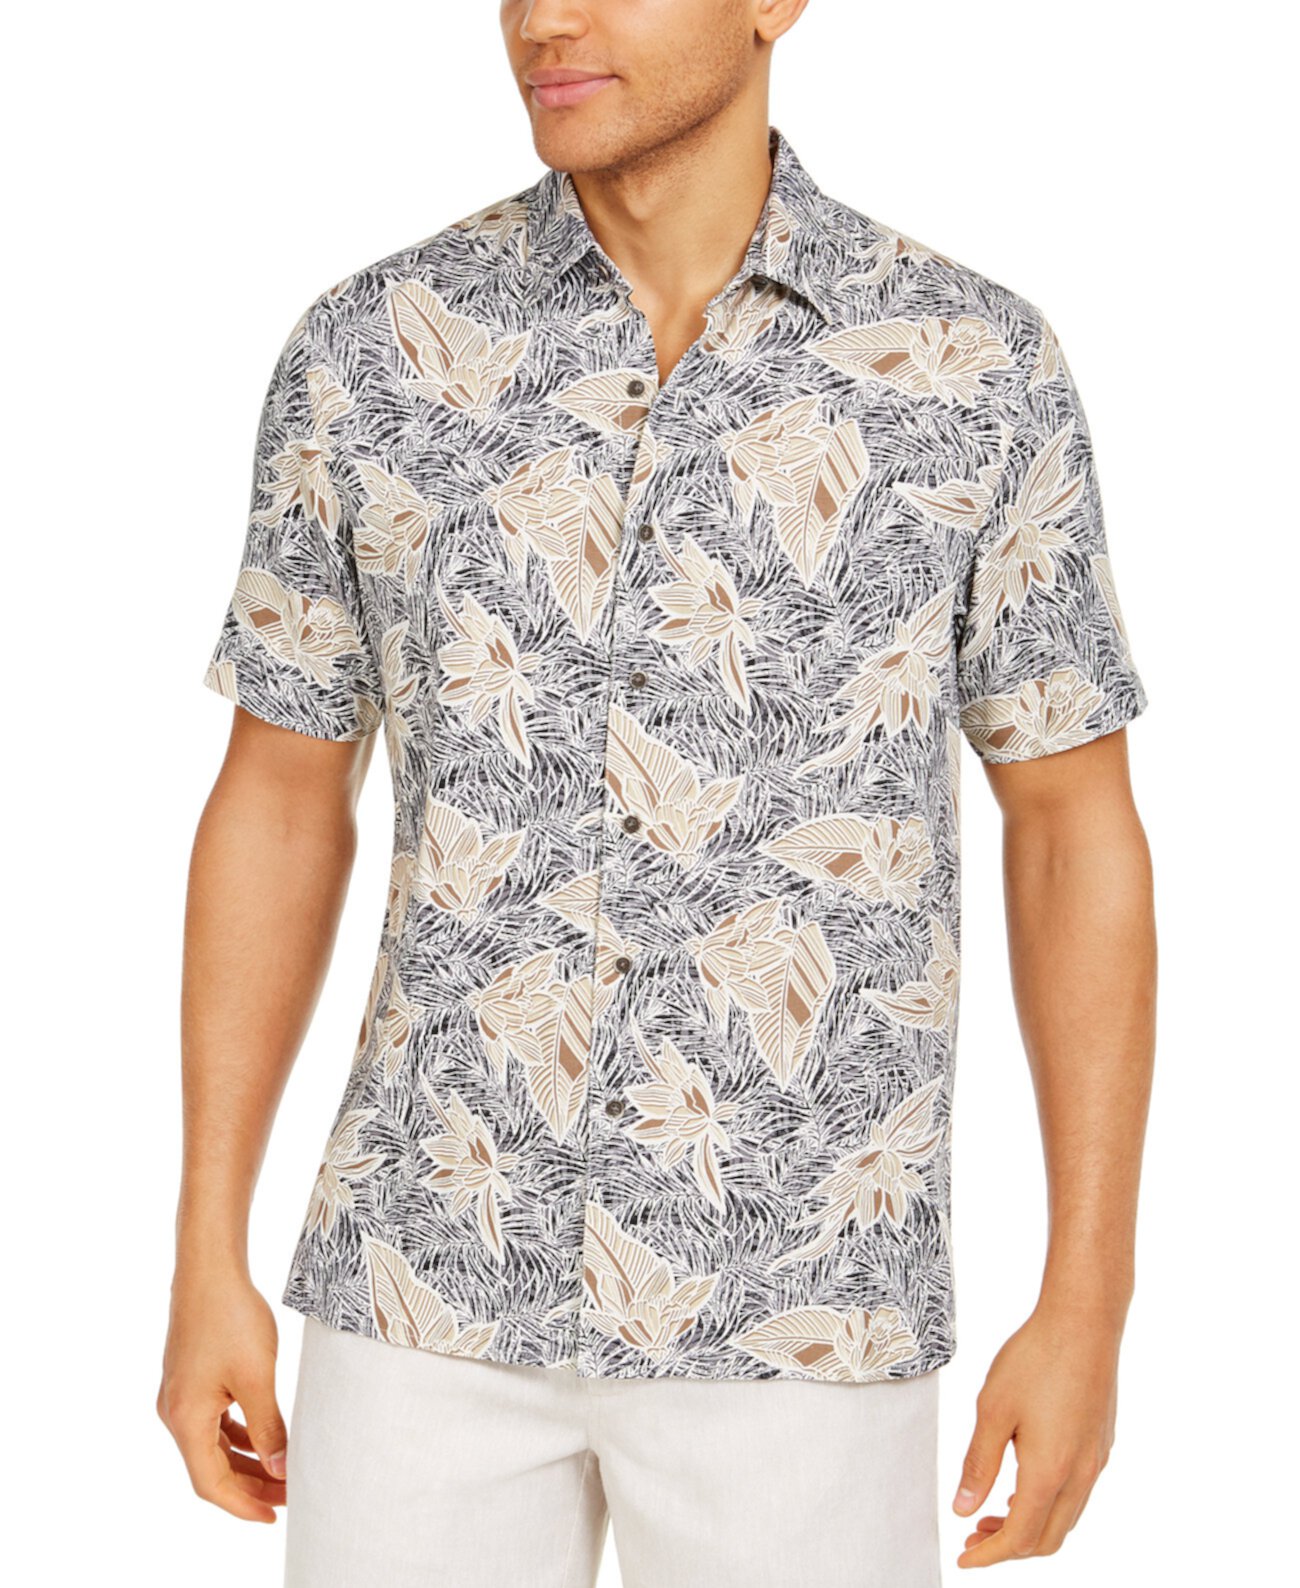 Мужская рубашка с цветочным принтом, созданная для Macy's Tasso Elba